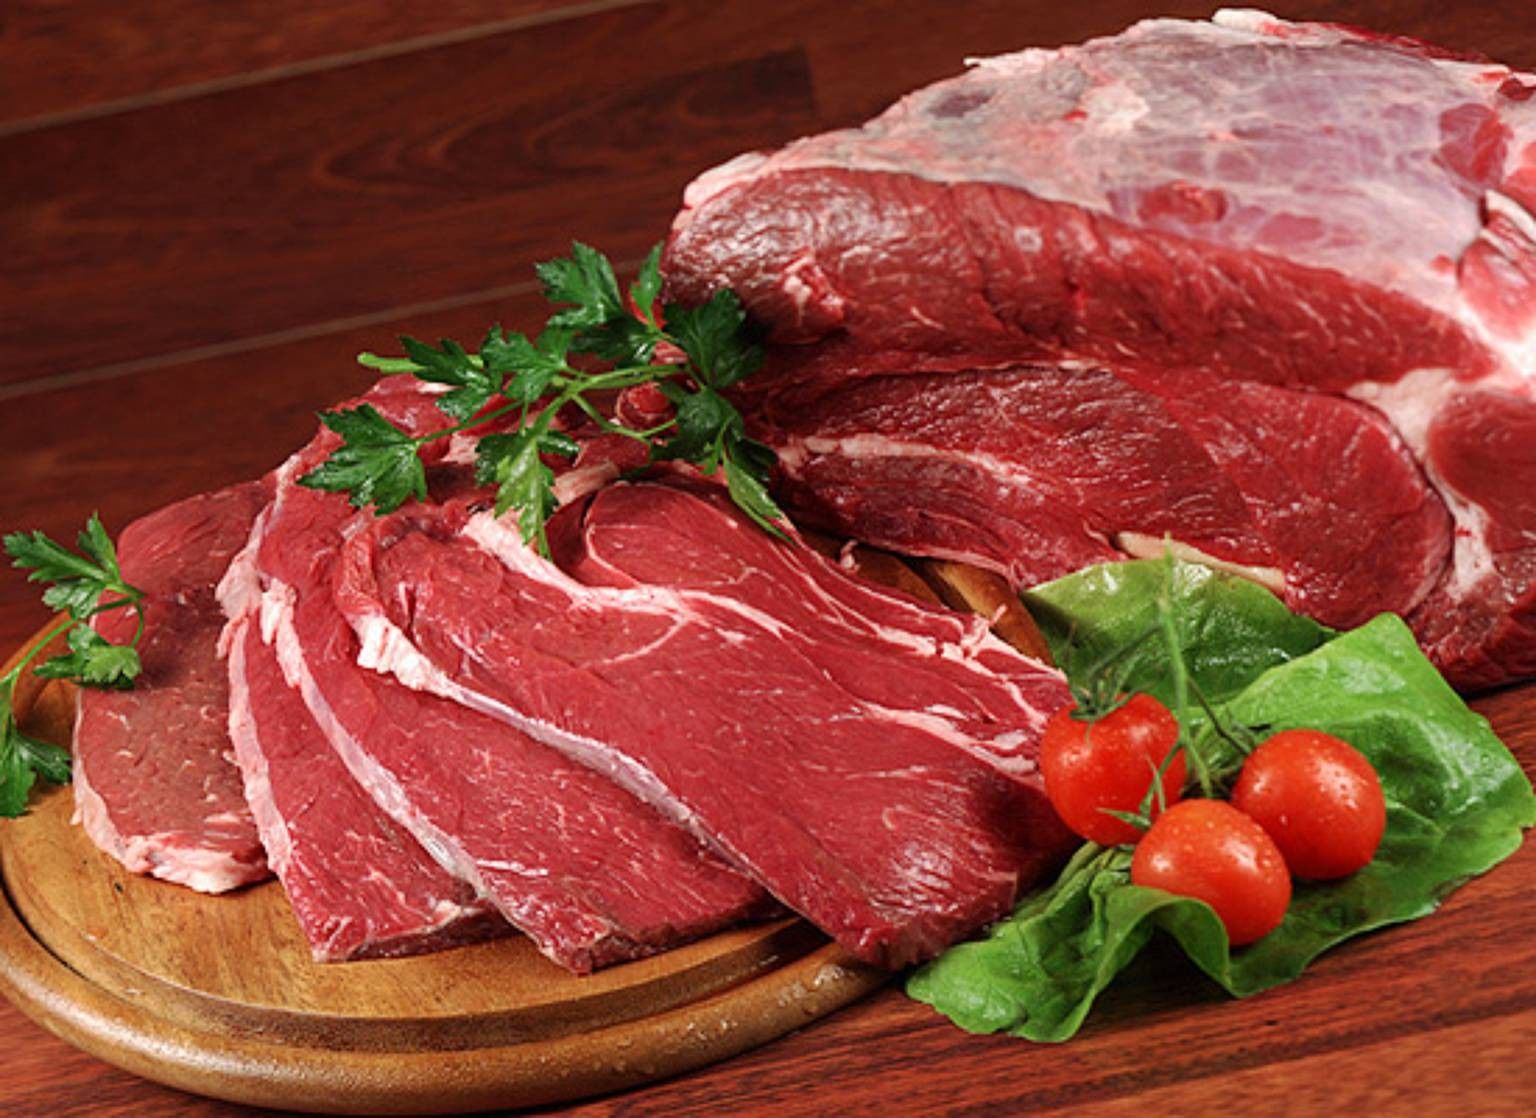 Червоне м'ясо небезпечне для здоров'я: скільки можна з'їсти та чим можна замінити